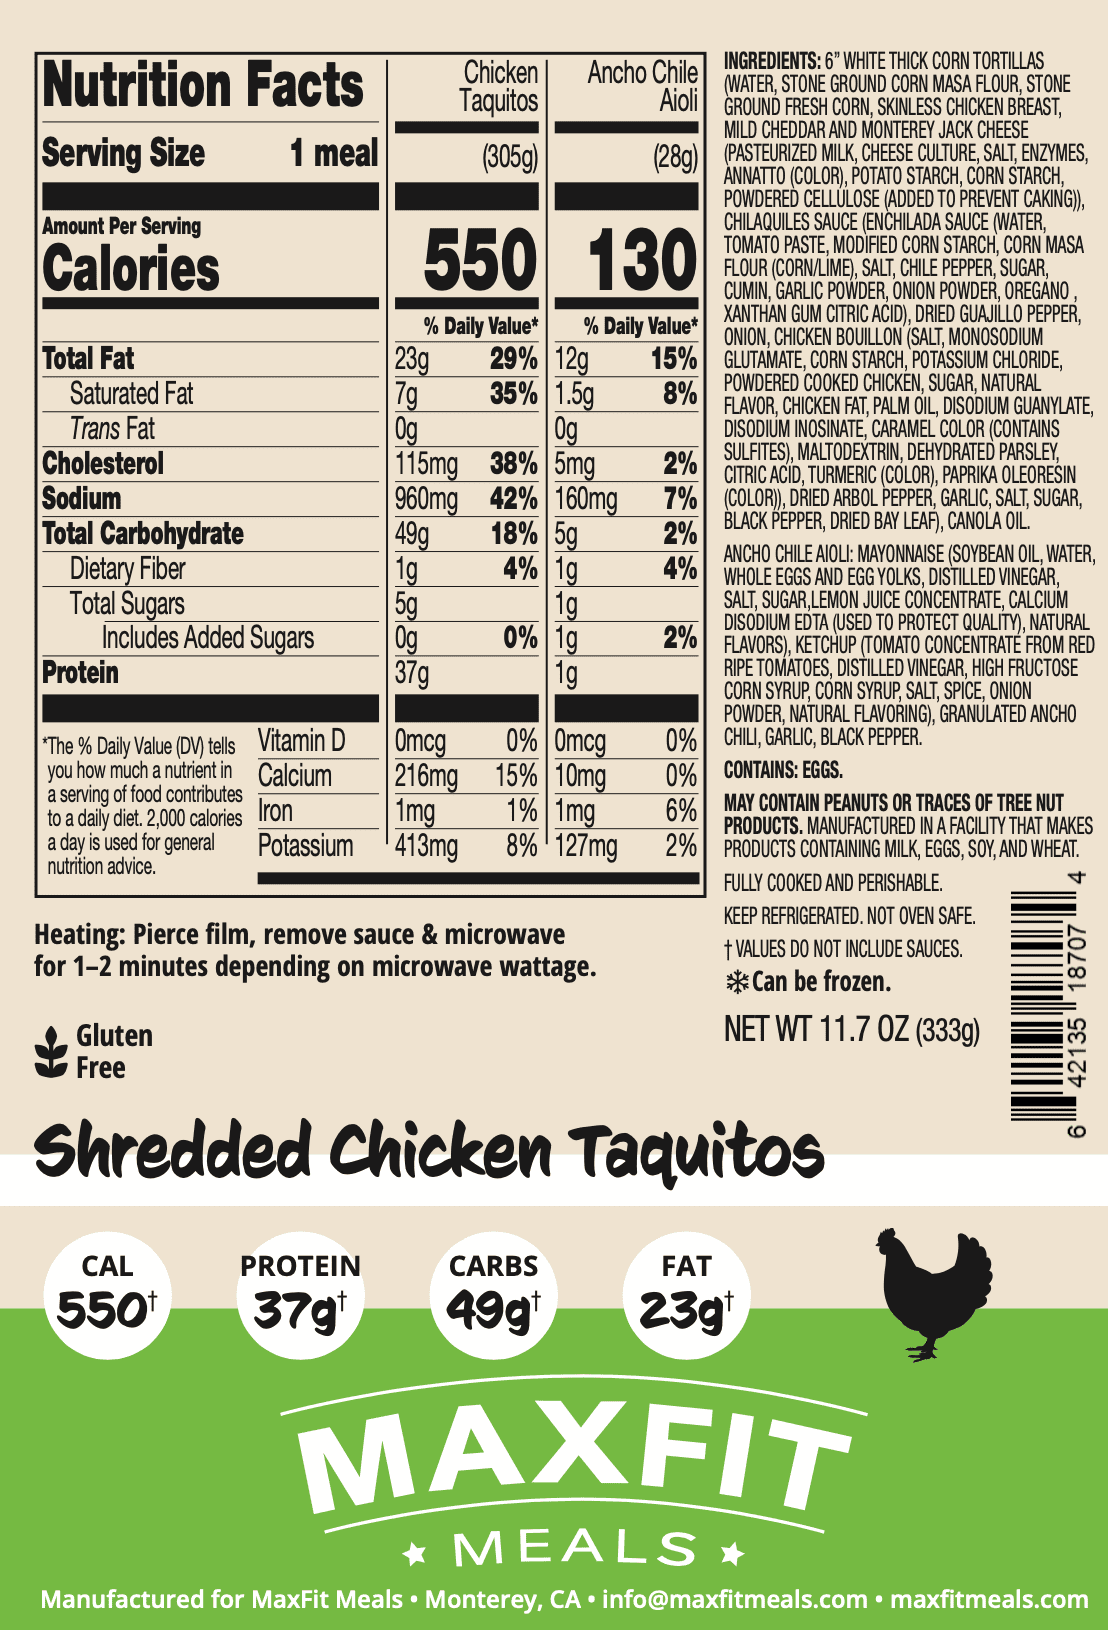 Shredded Chicken Taquitos